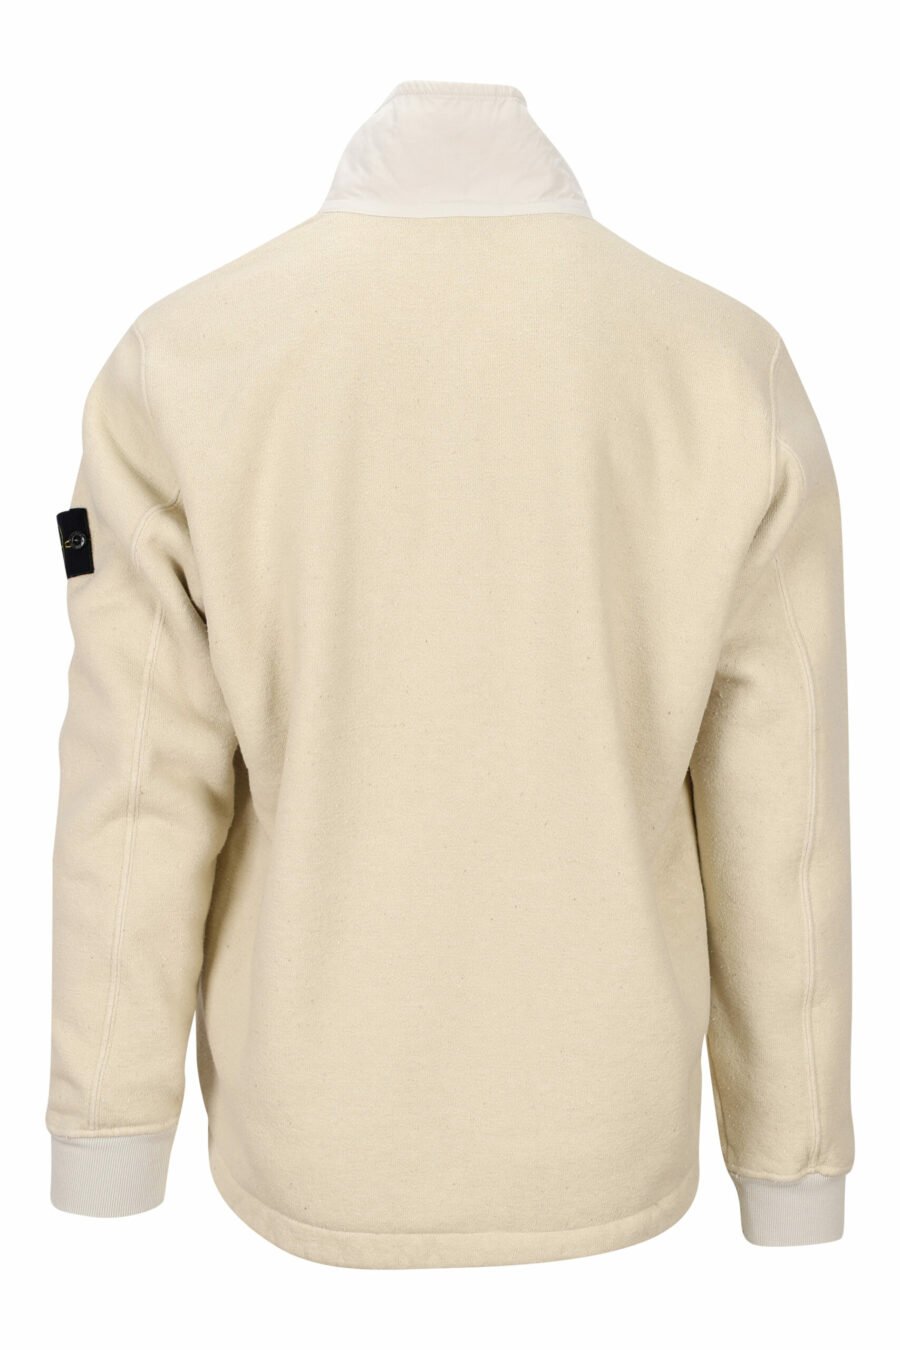 Beigefarbenes Mix-Sweatshirt mit Reißverschluss und Fleecekragen - 8052572757938 2 skaliert